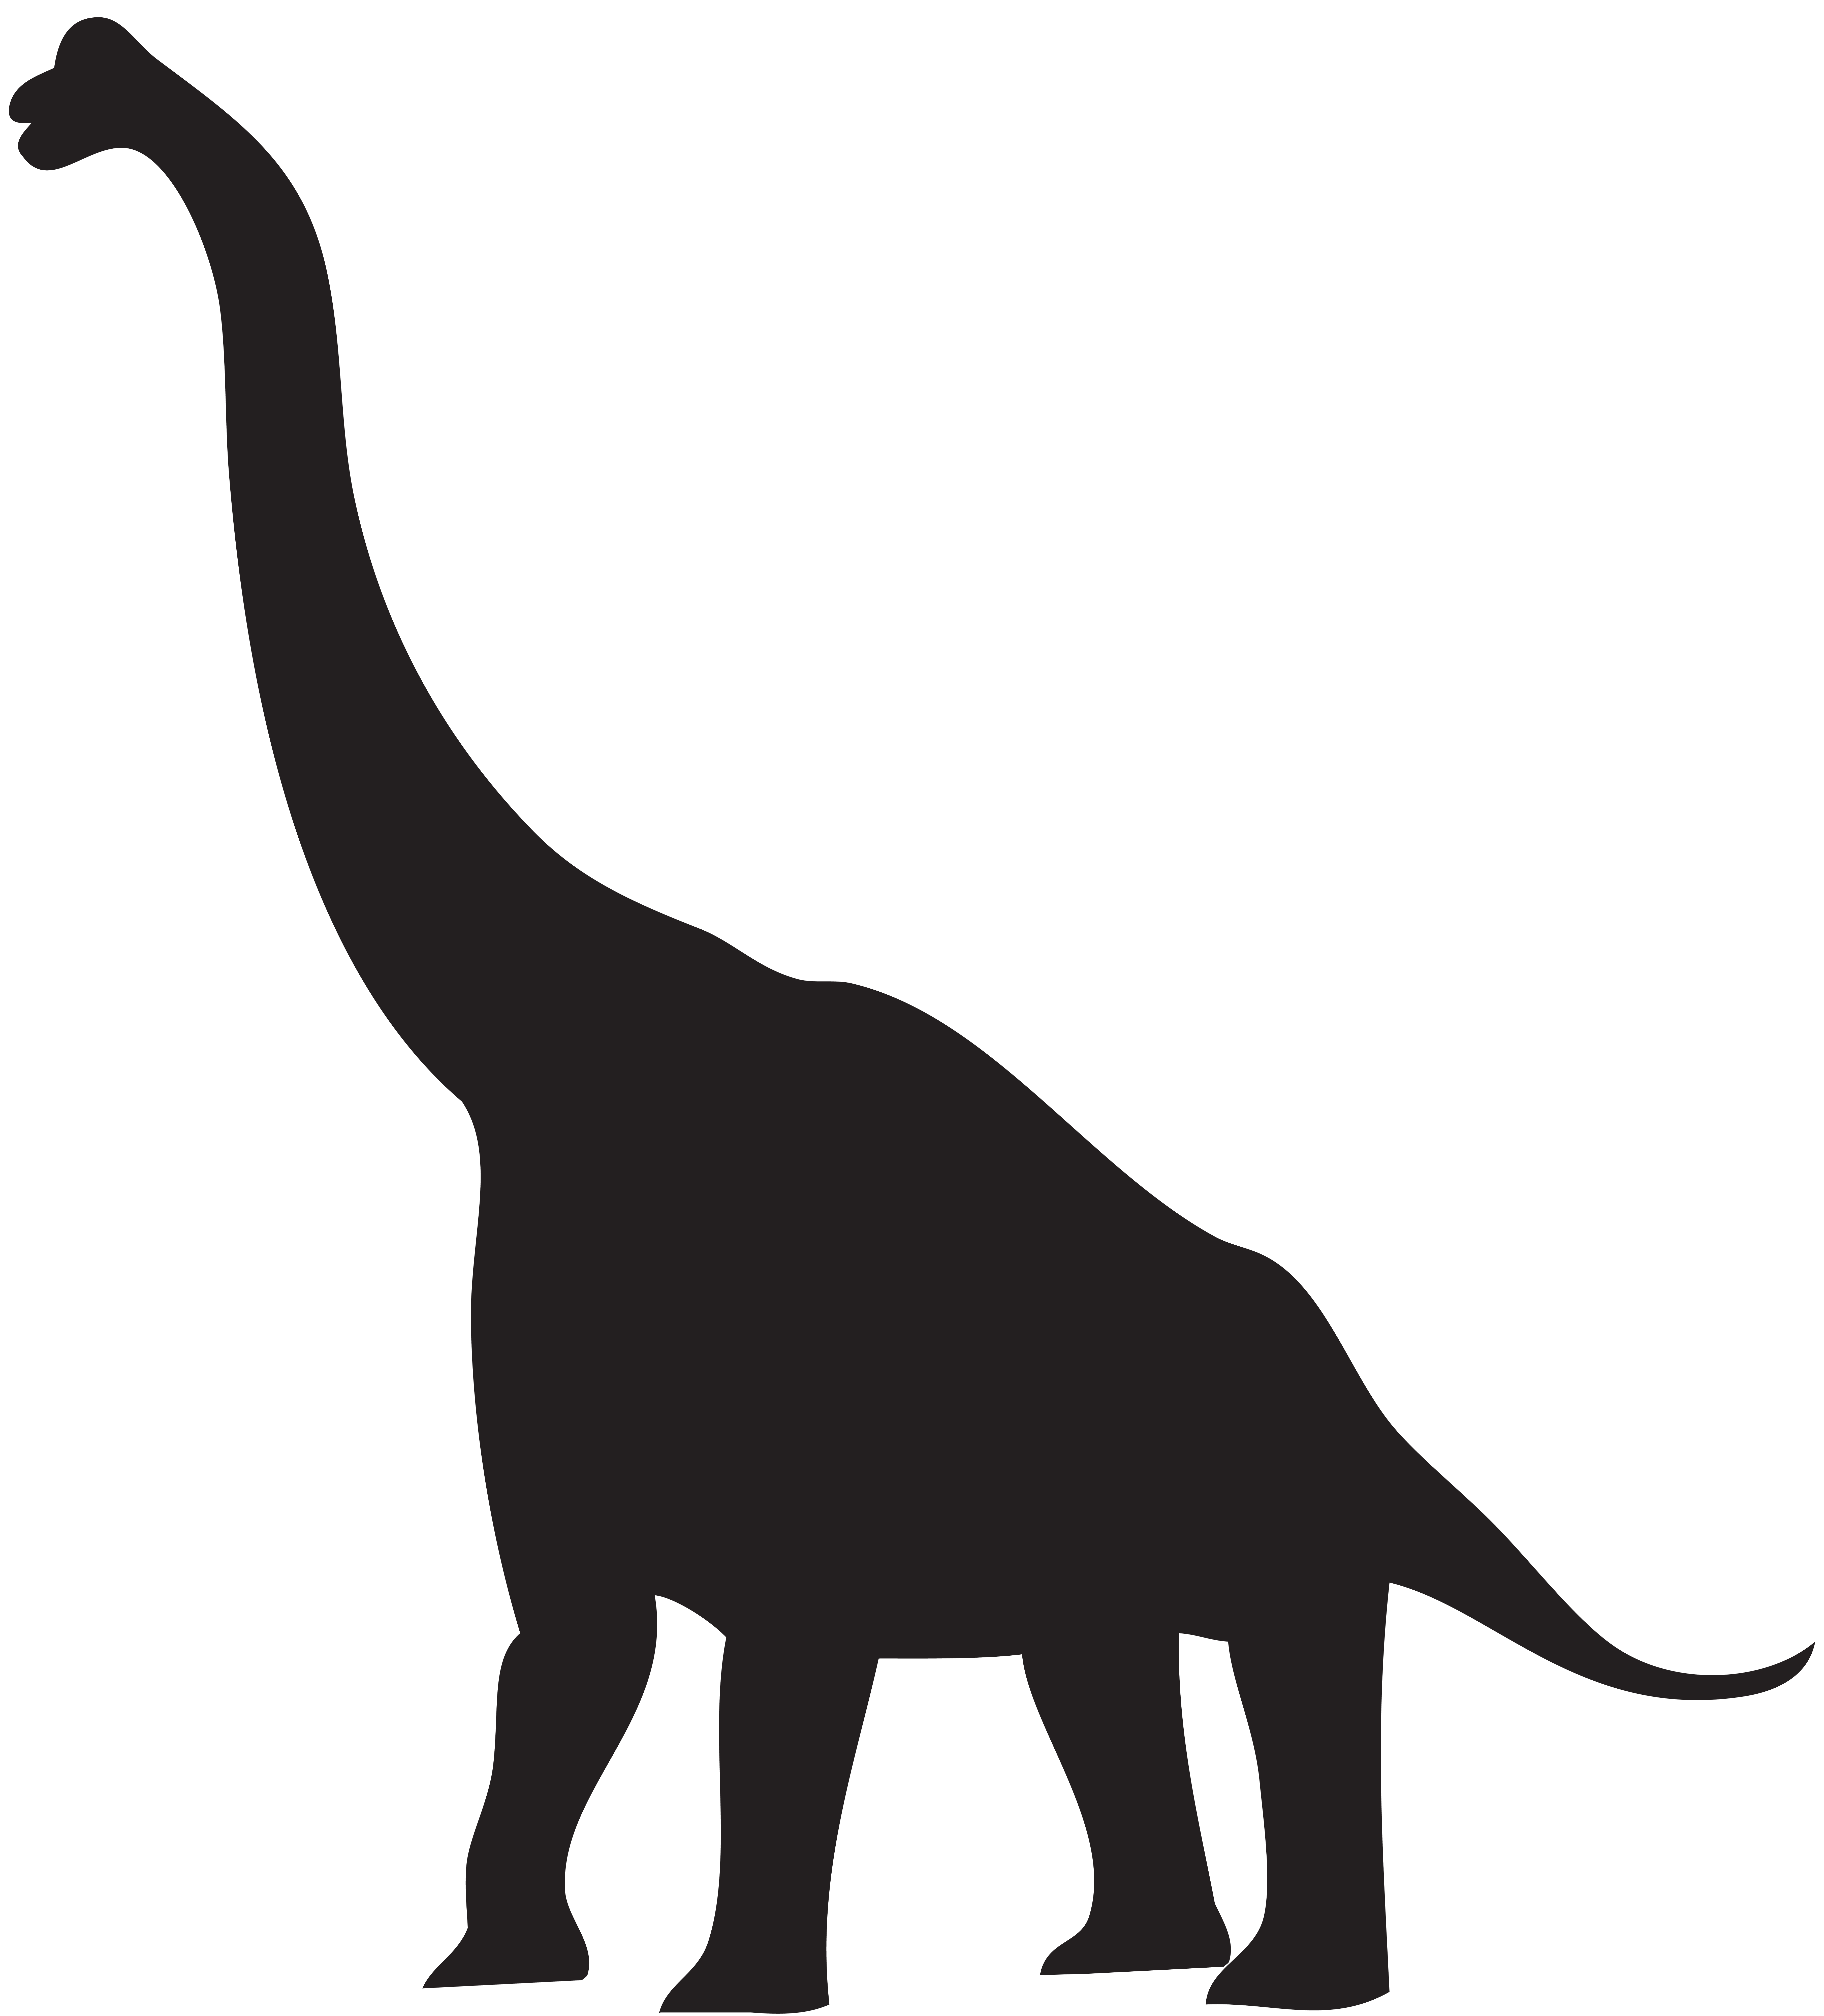 Silhouette Dinosaur Svg 434+ SVG Design FIle Free SVG Backgrounds